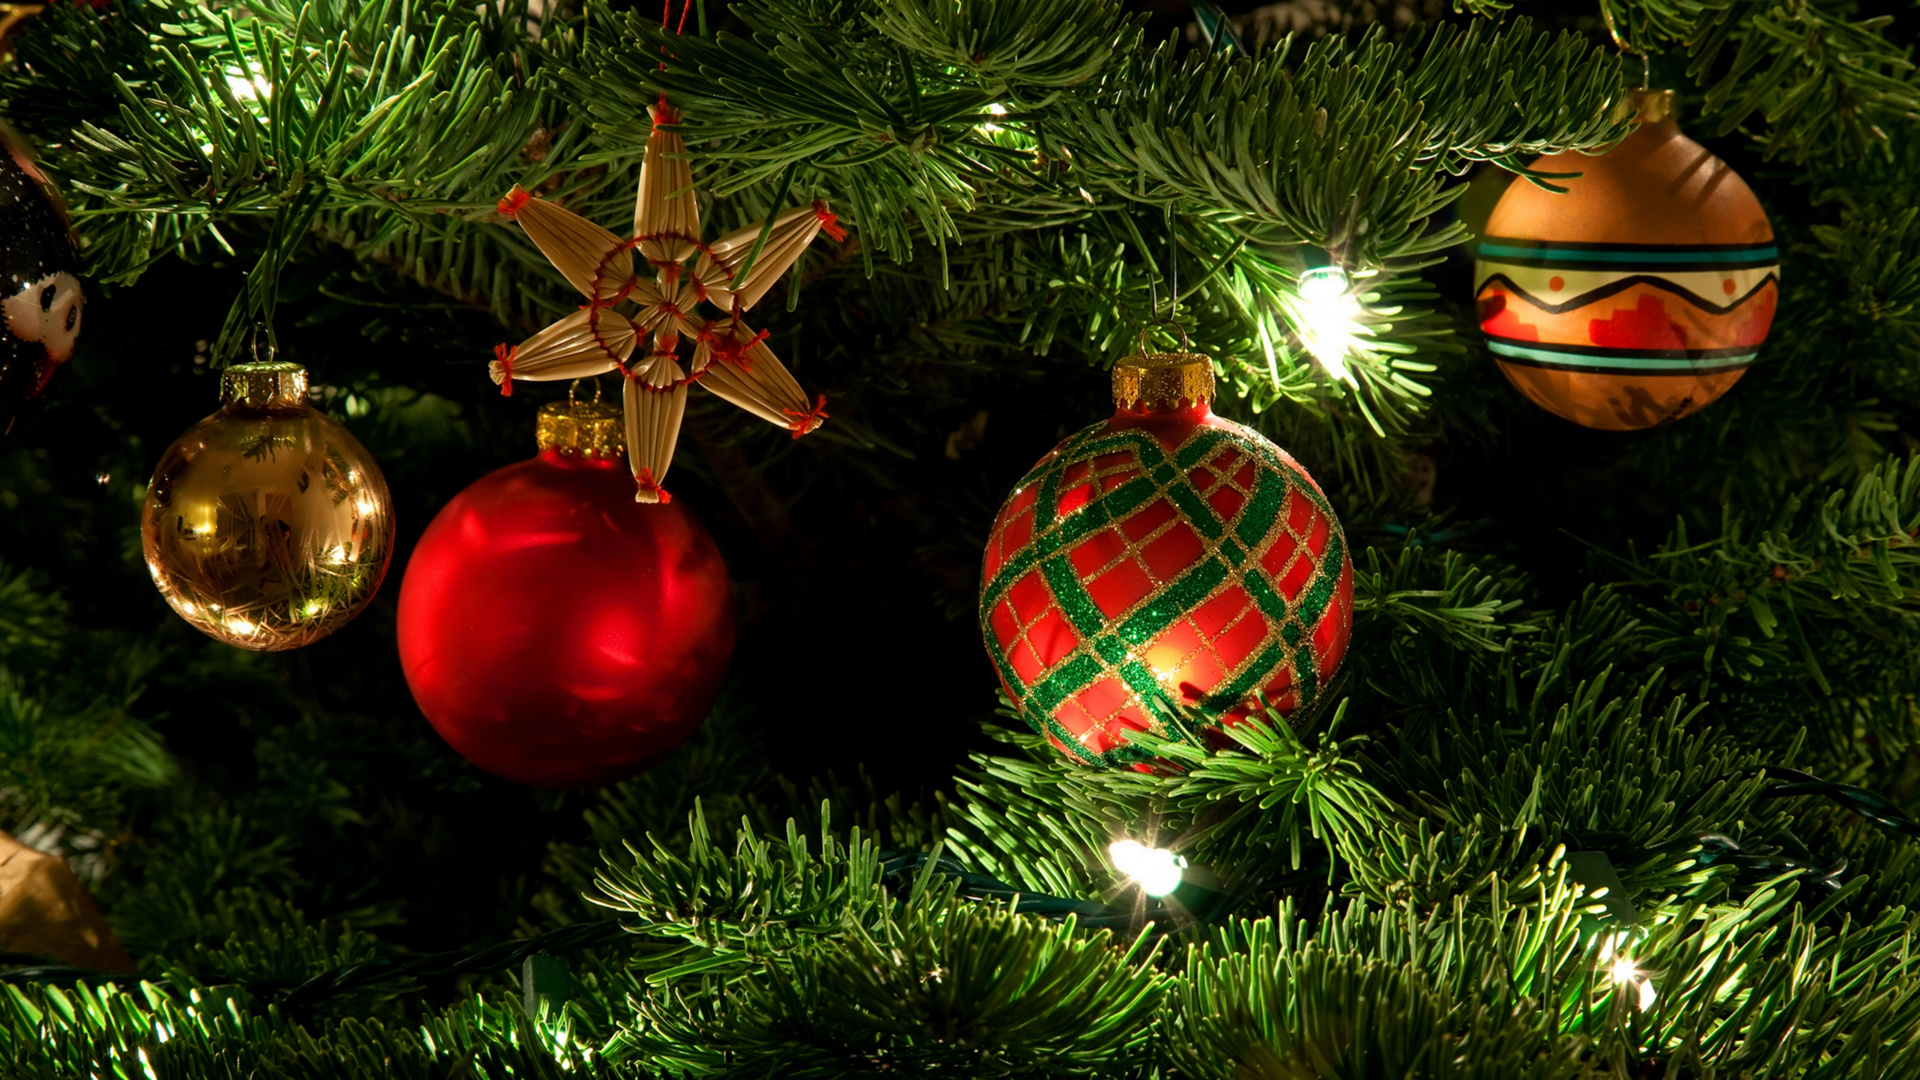 Weihnachten, Christmas Ornament, Weihnachtsdekoration, Weihnachtsbaum, Baum. Wallpaper in 1920x1080 Resolution